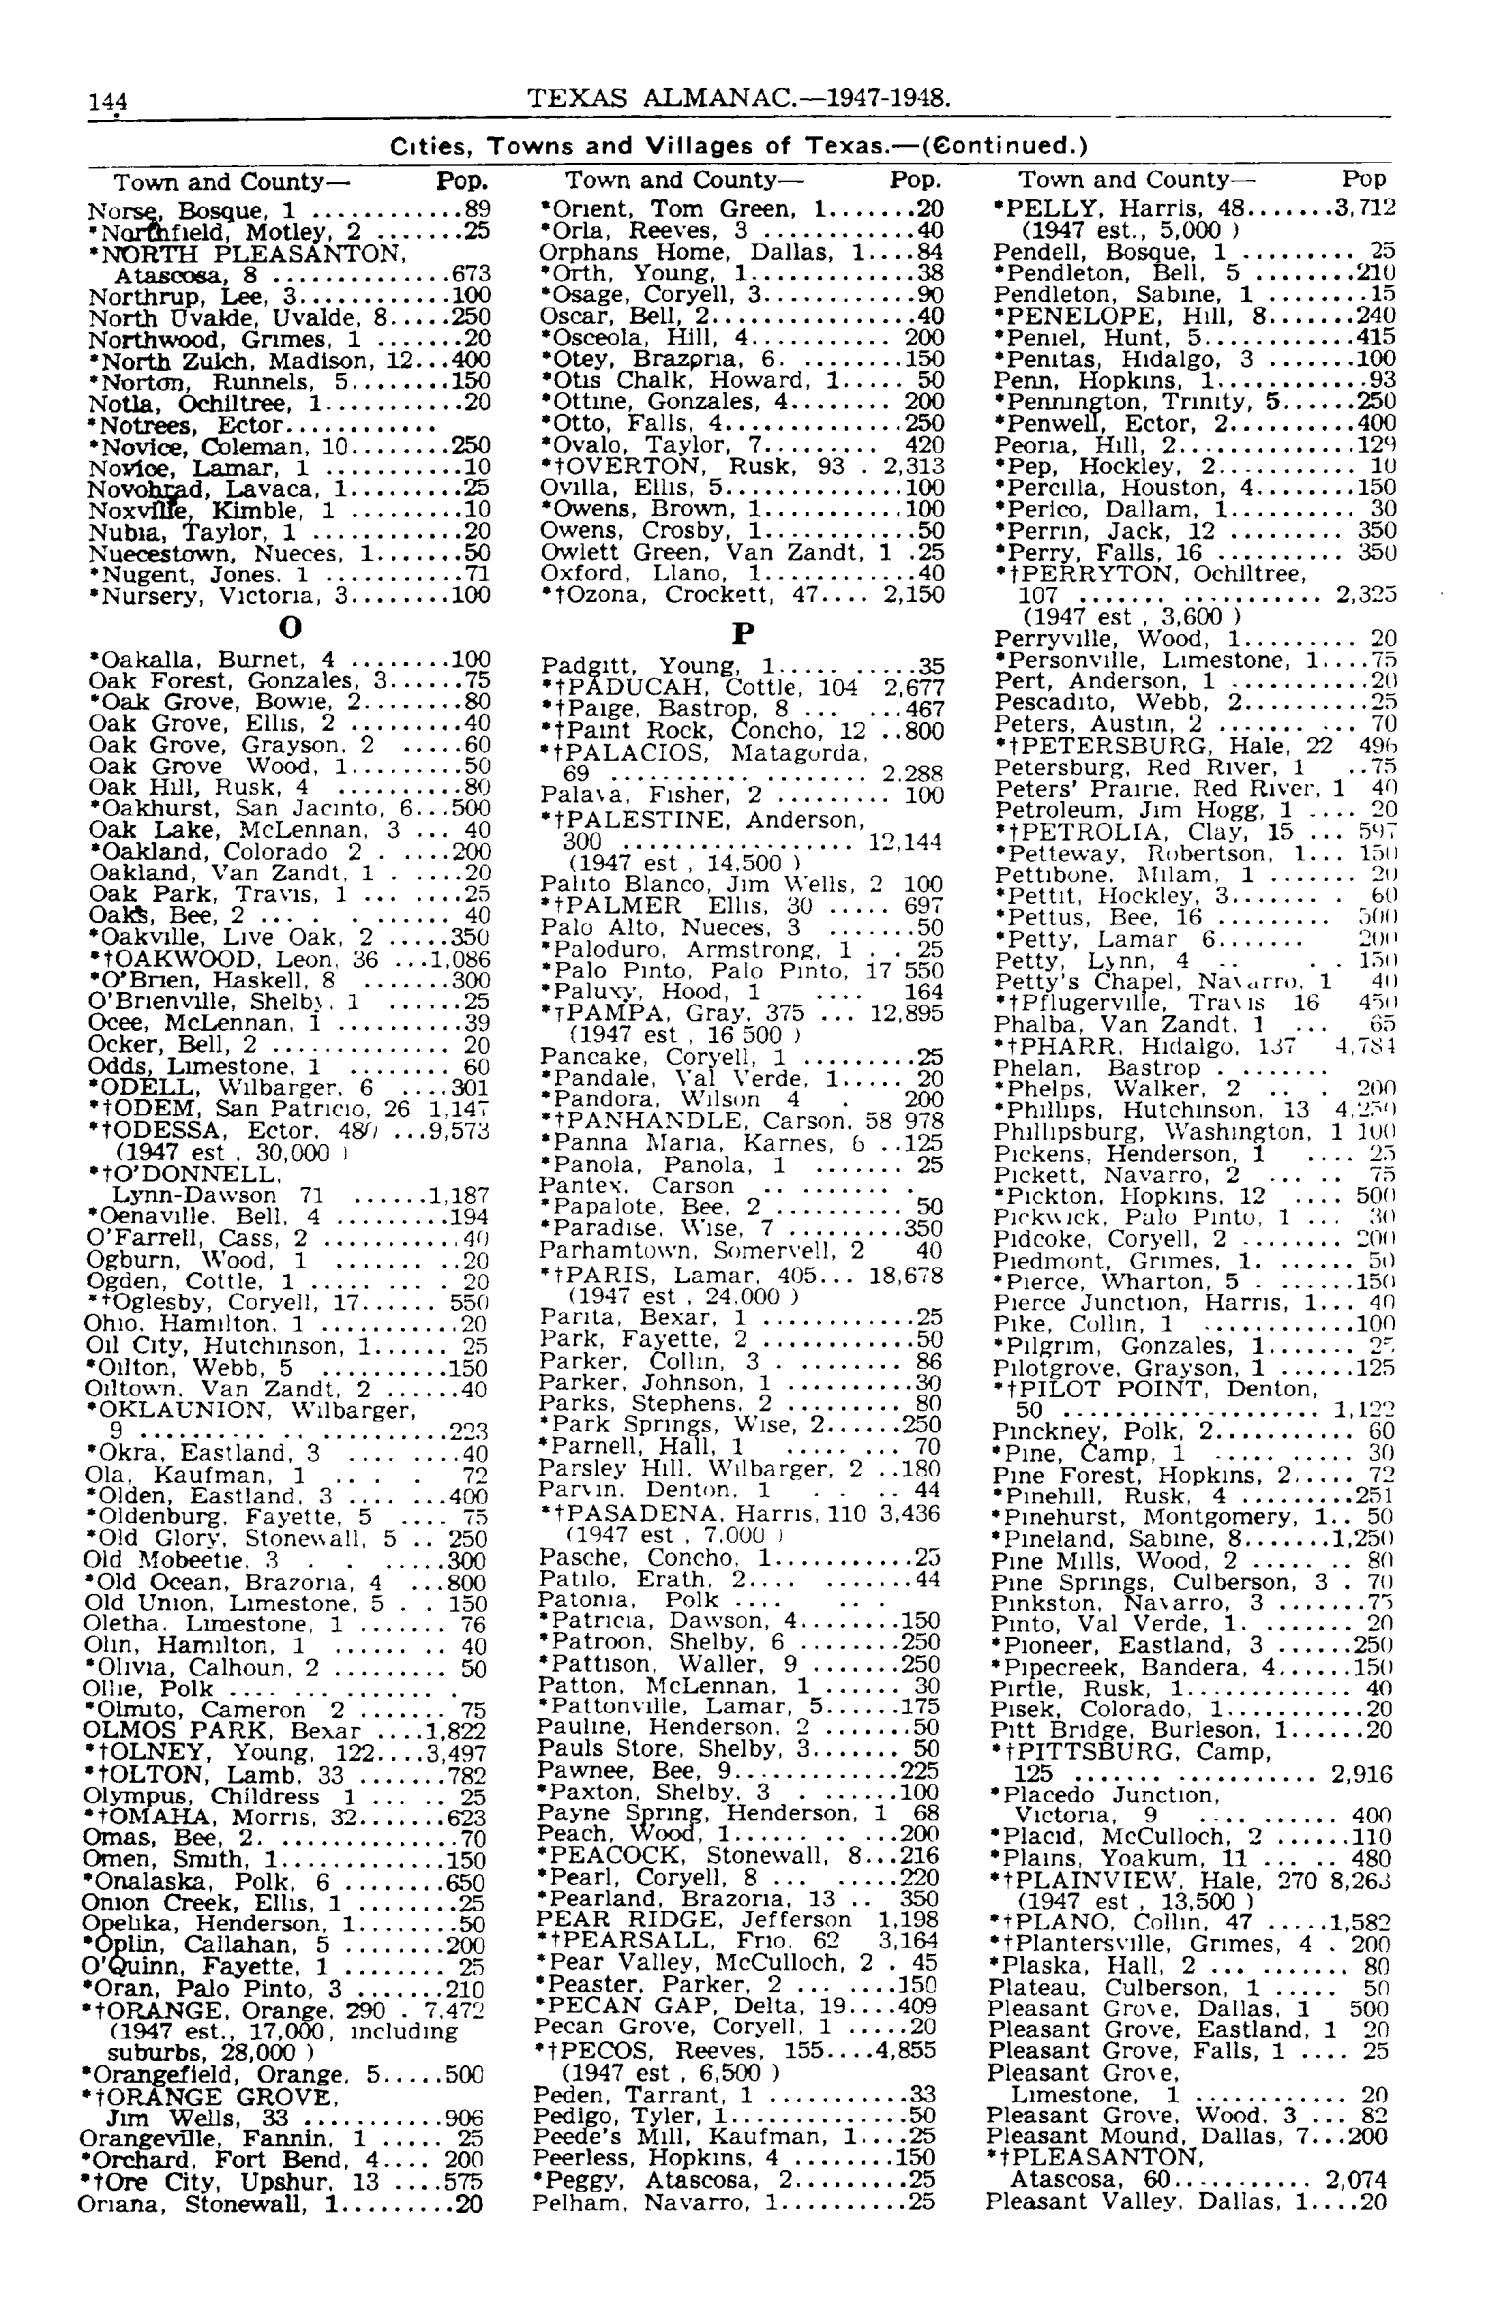 Texas Almanac, 1947-1948
                                                
                                                    144
                                                